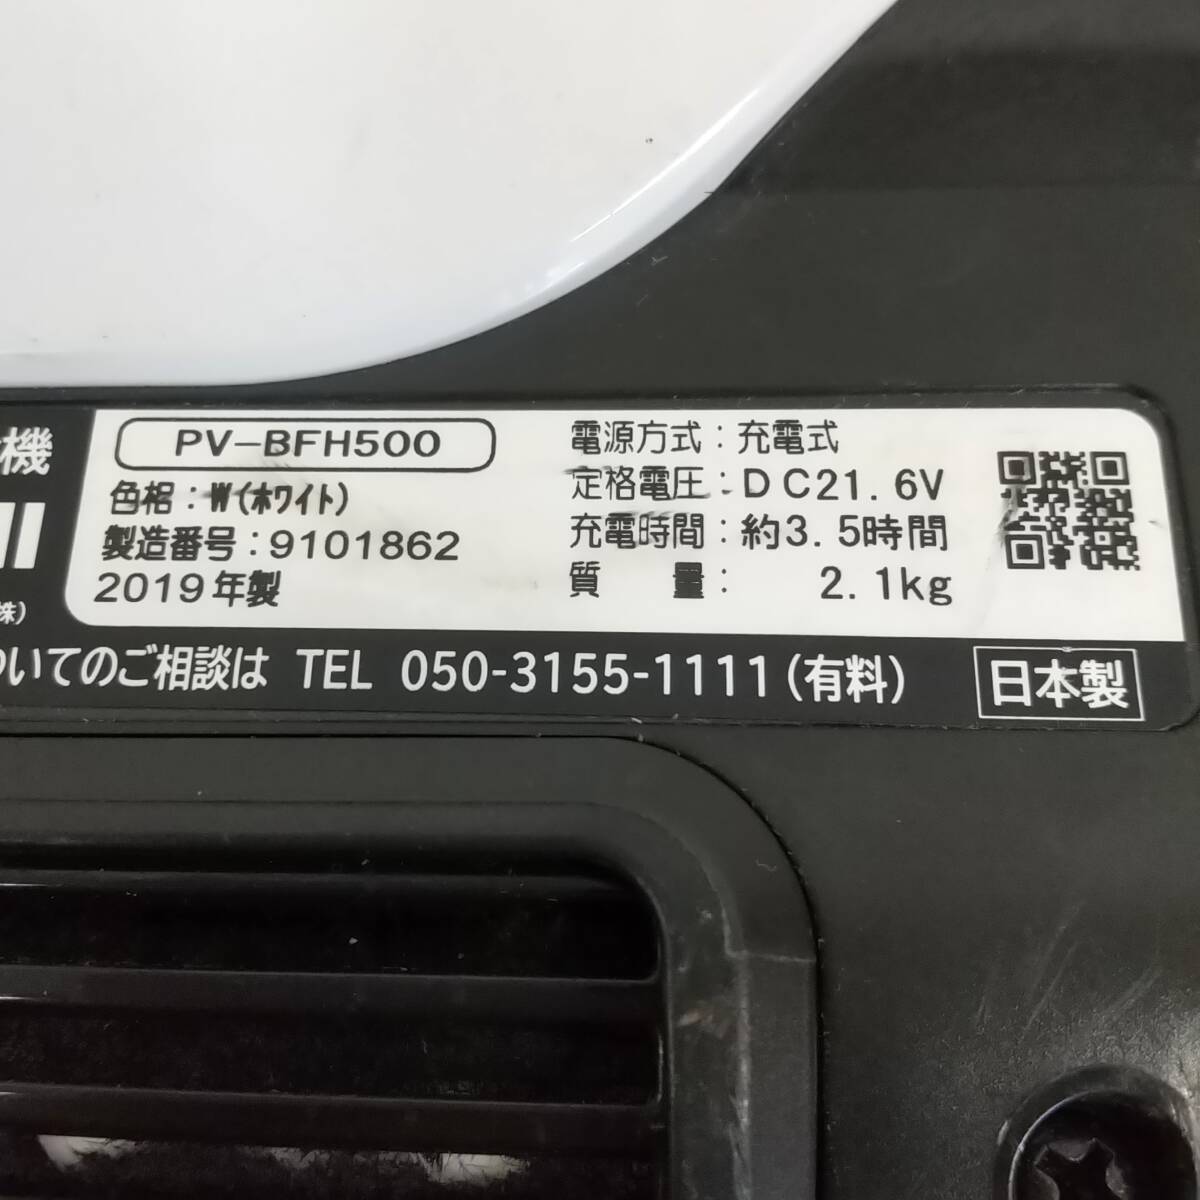 ※バッテリーは付属されていません※【861】中古品 2019年製 日立 コードレスクリーナー PV-BFH500_画像5